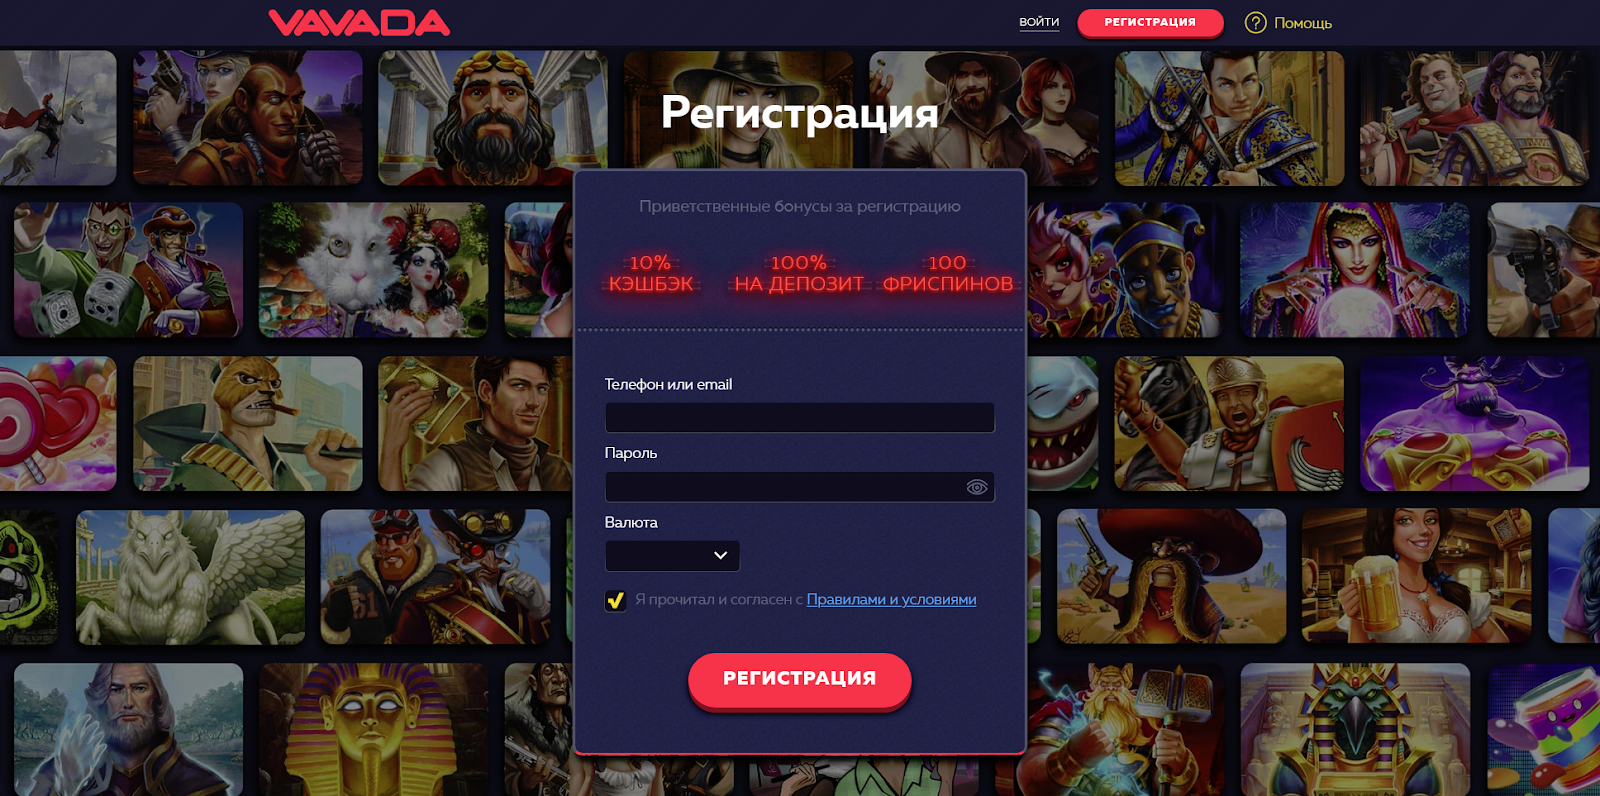 VAVADA – партнёрская программа онлайн-казино, отзывы и обзор